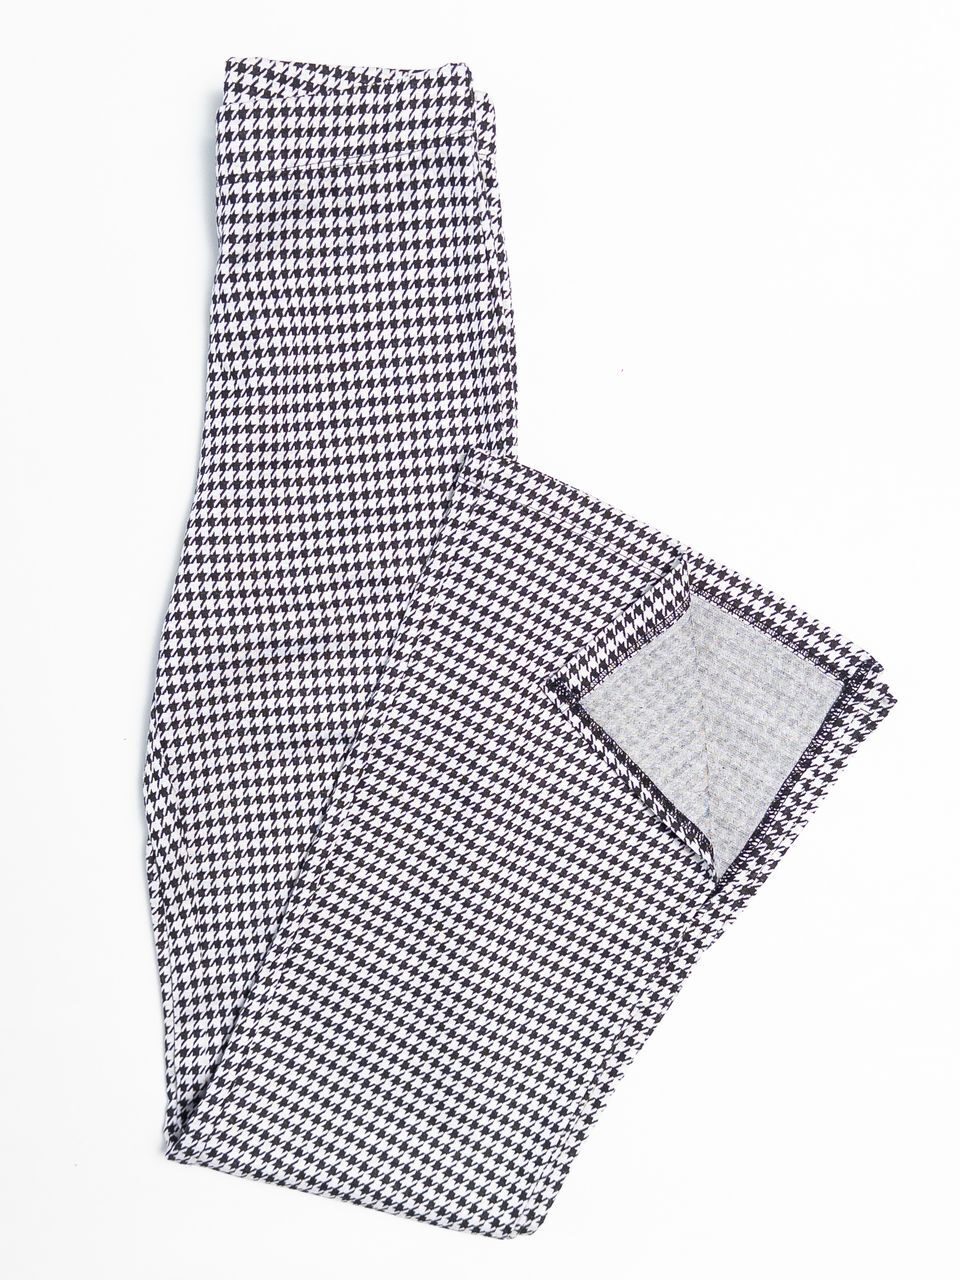 Брюки из плотного трикотажа женские расклешенные штанины с разрезом внизу цвет белый/черный принт гусиная лапка размер EUR 34 (rus 40) H&M